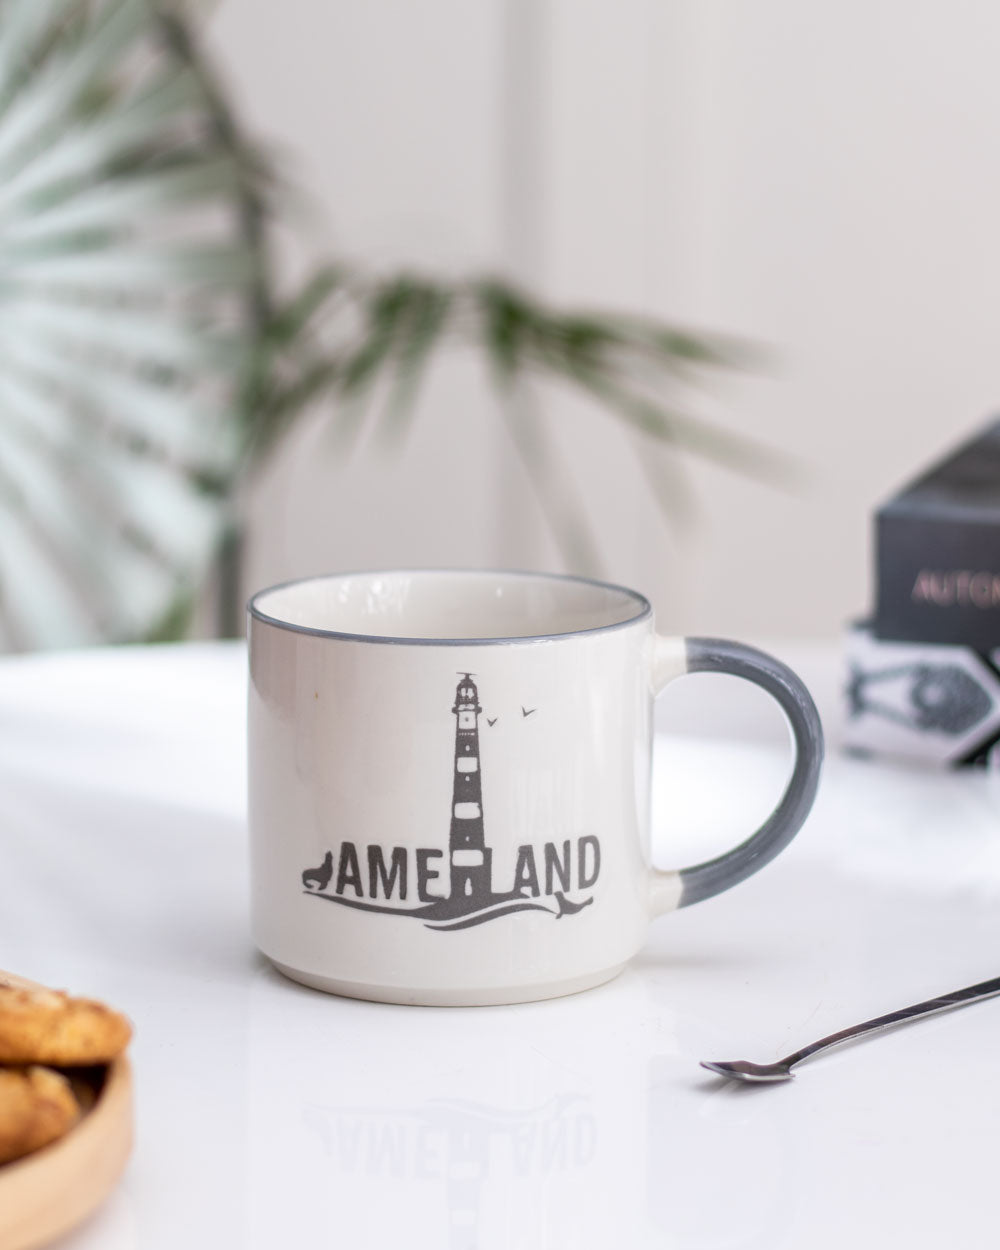 'Ameland' Coffee Mug - Grey